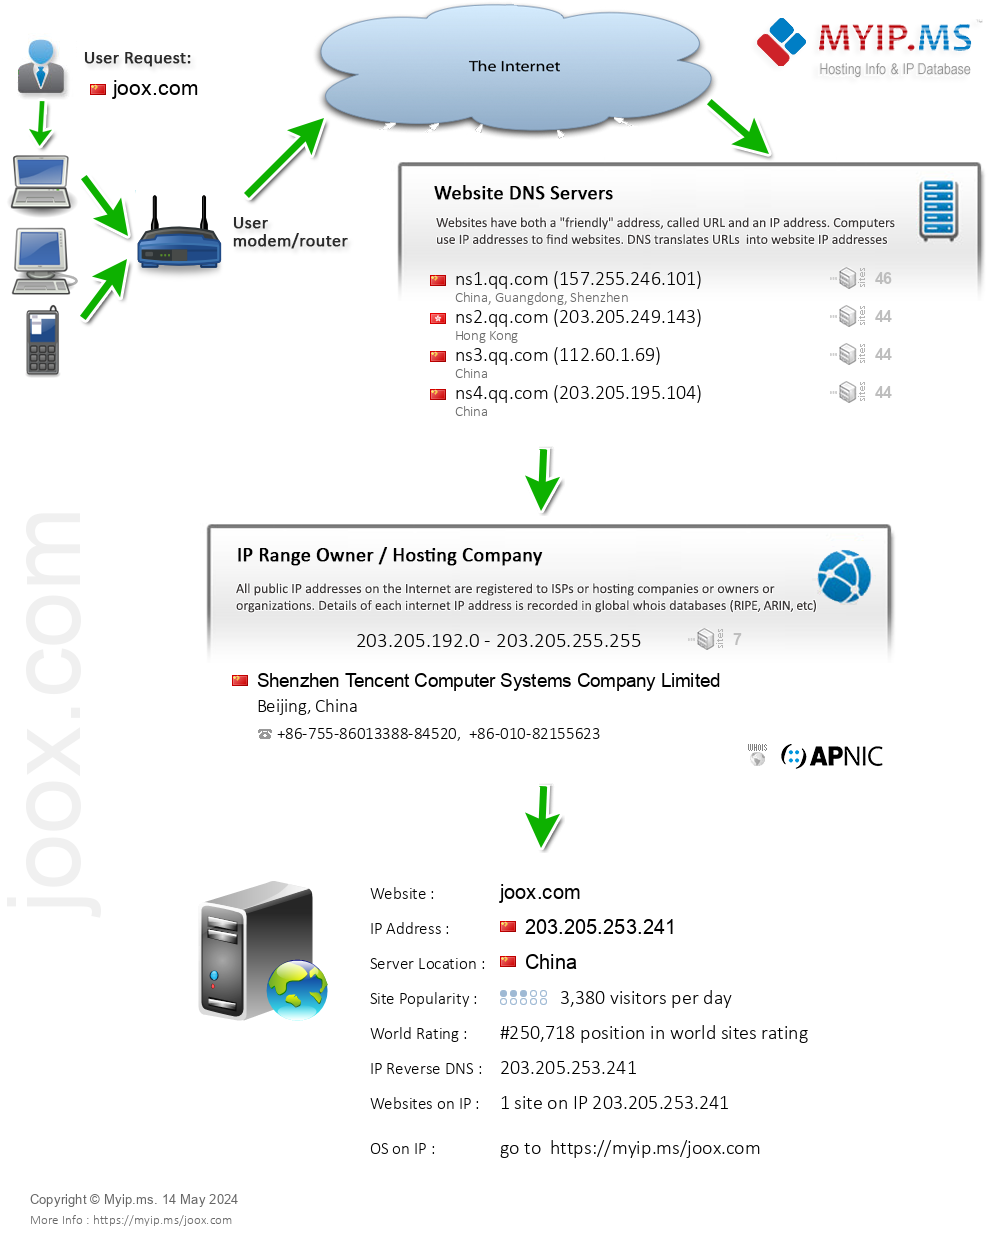 Joox.com - Website Hosting Visual IP Diagram